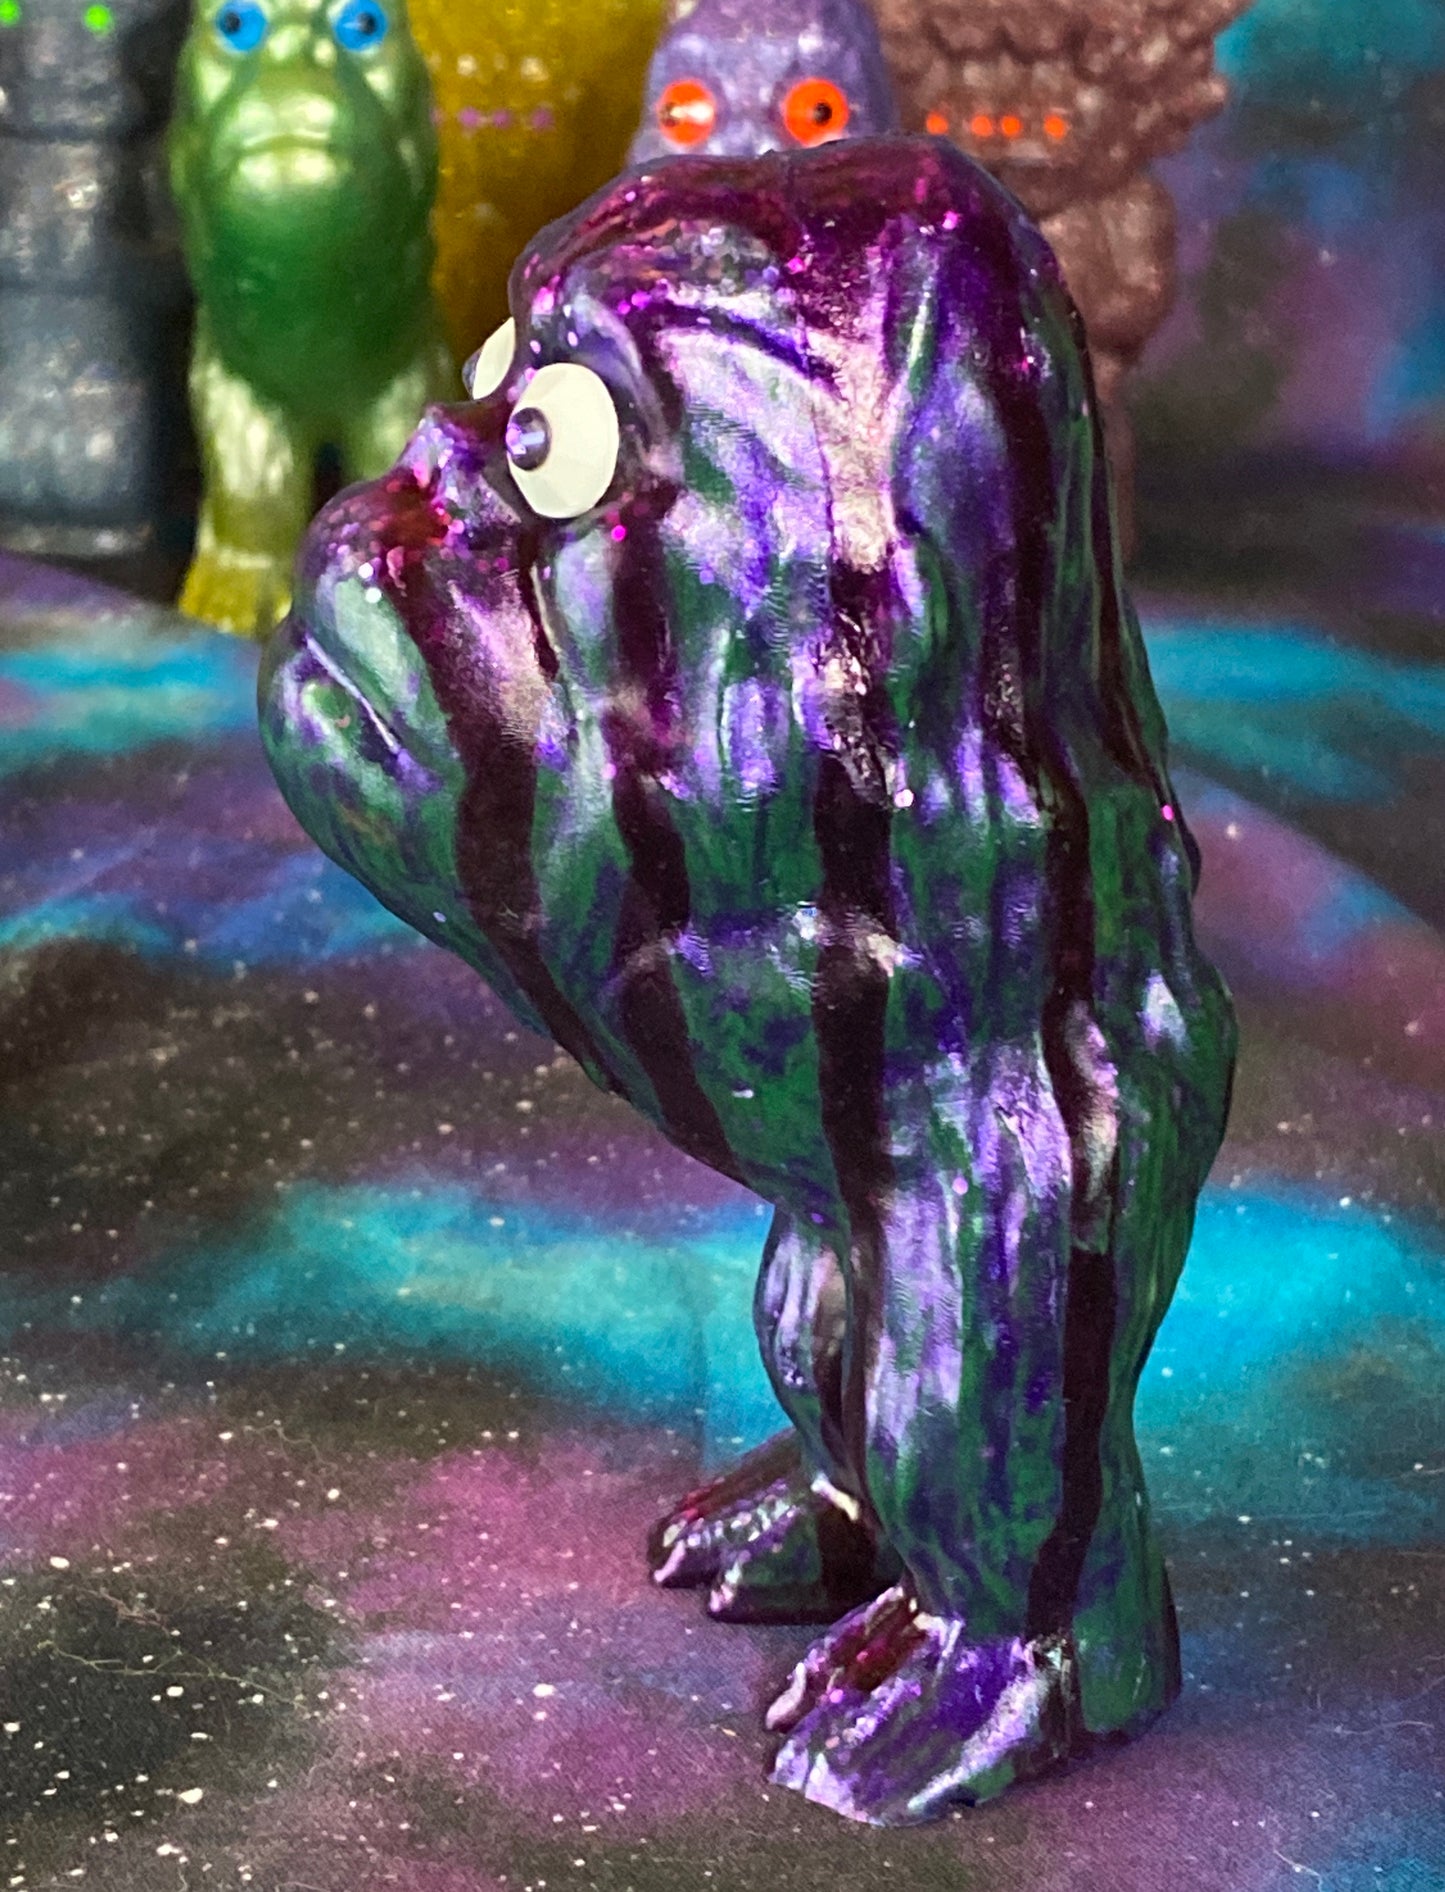 Ape Hopper: Resin Cast with Runny Purple Glitter